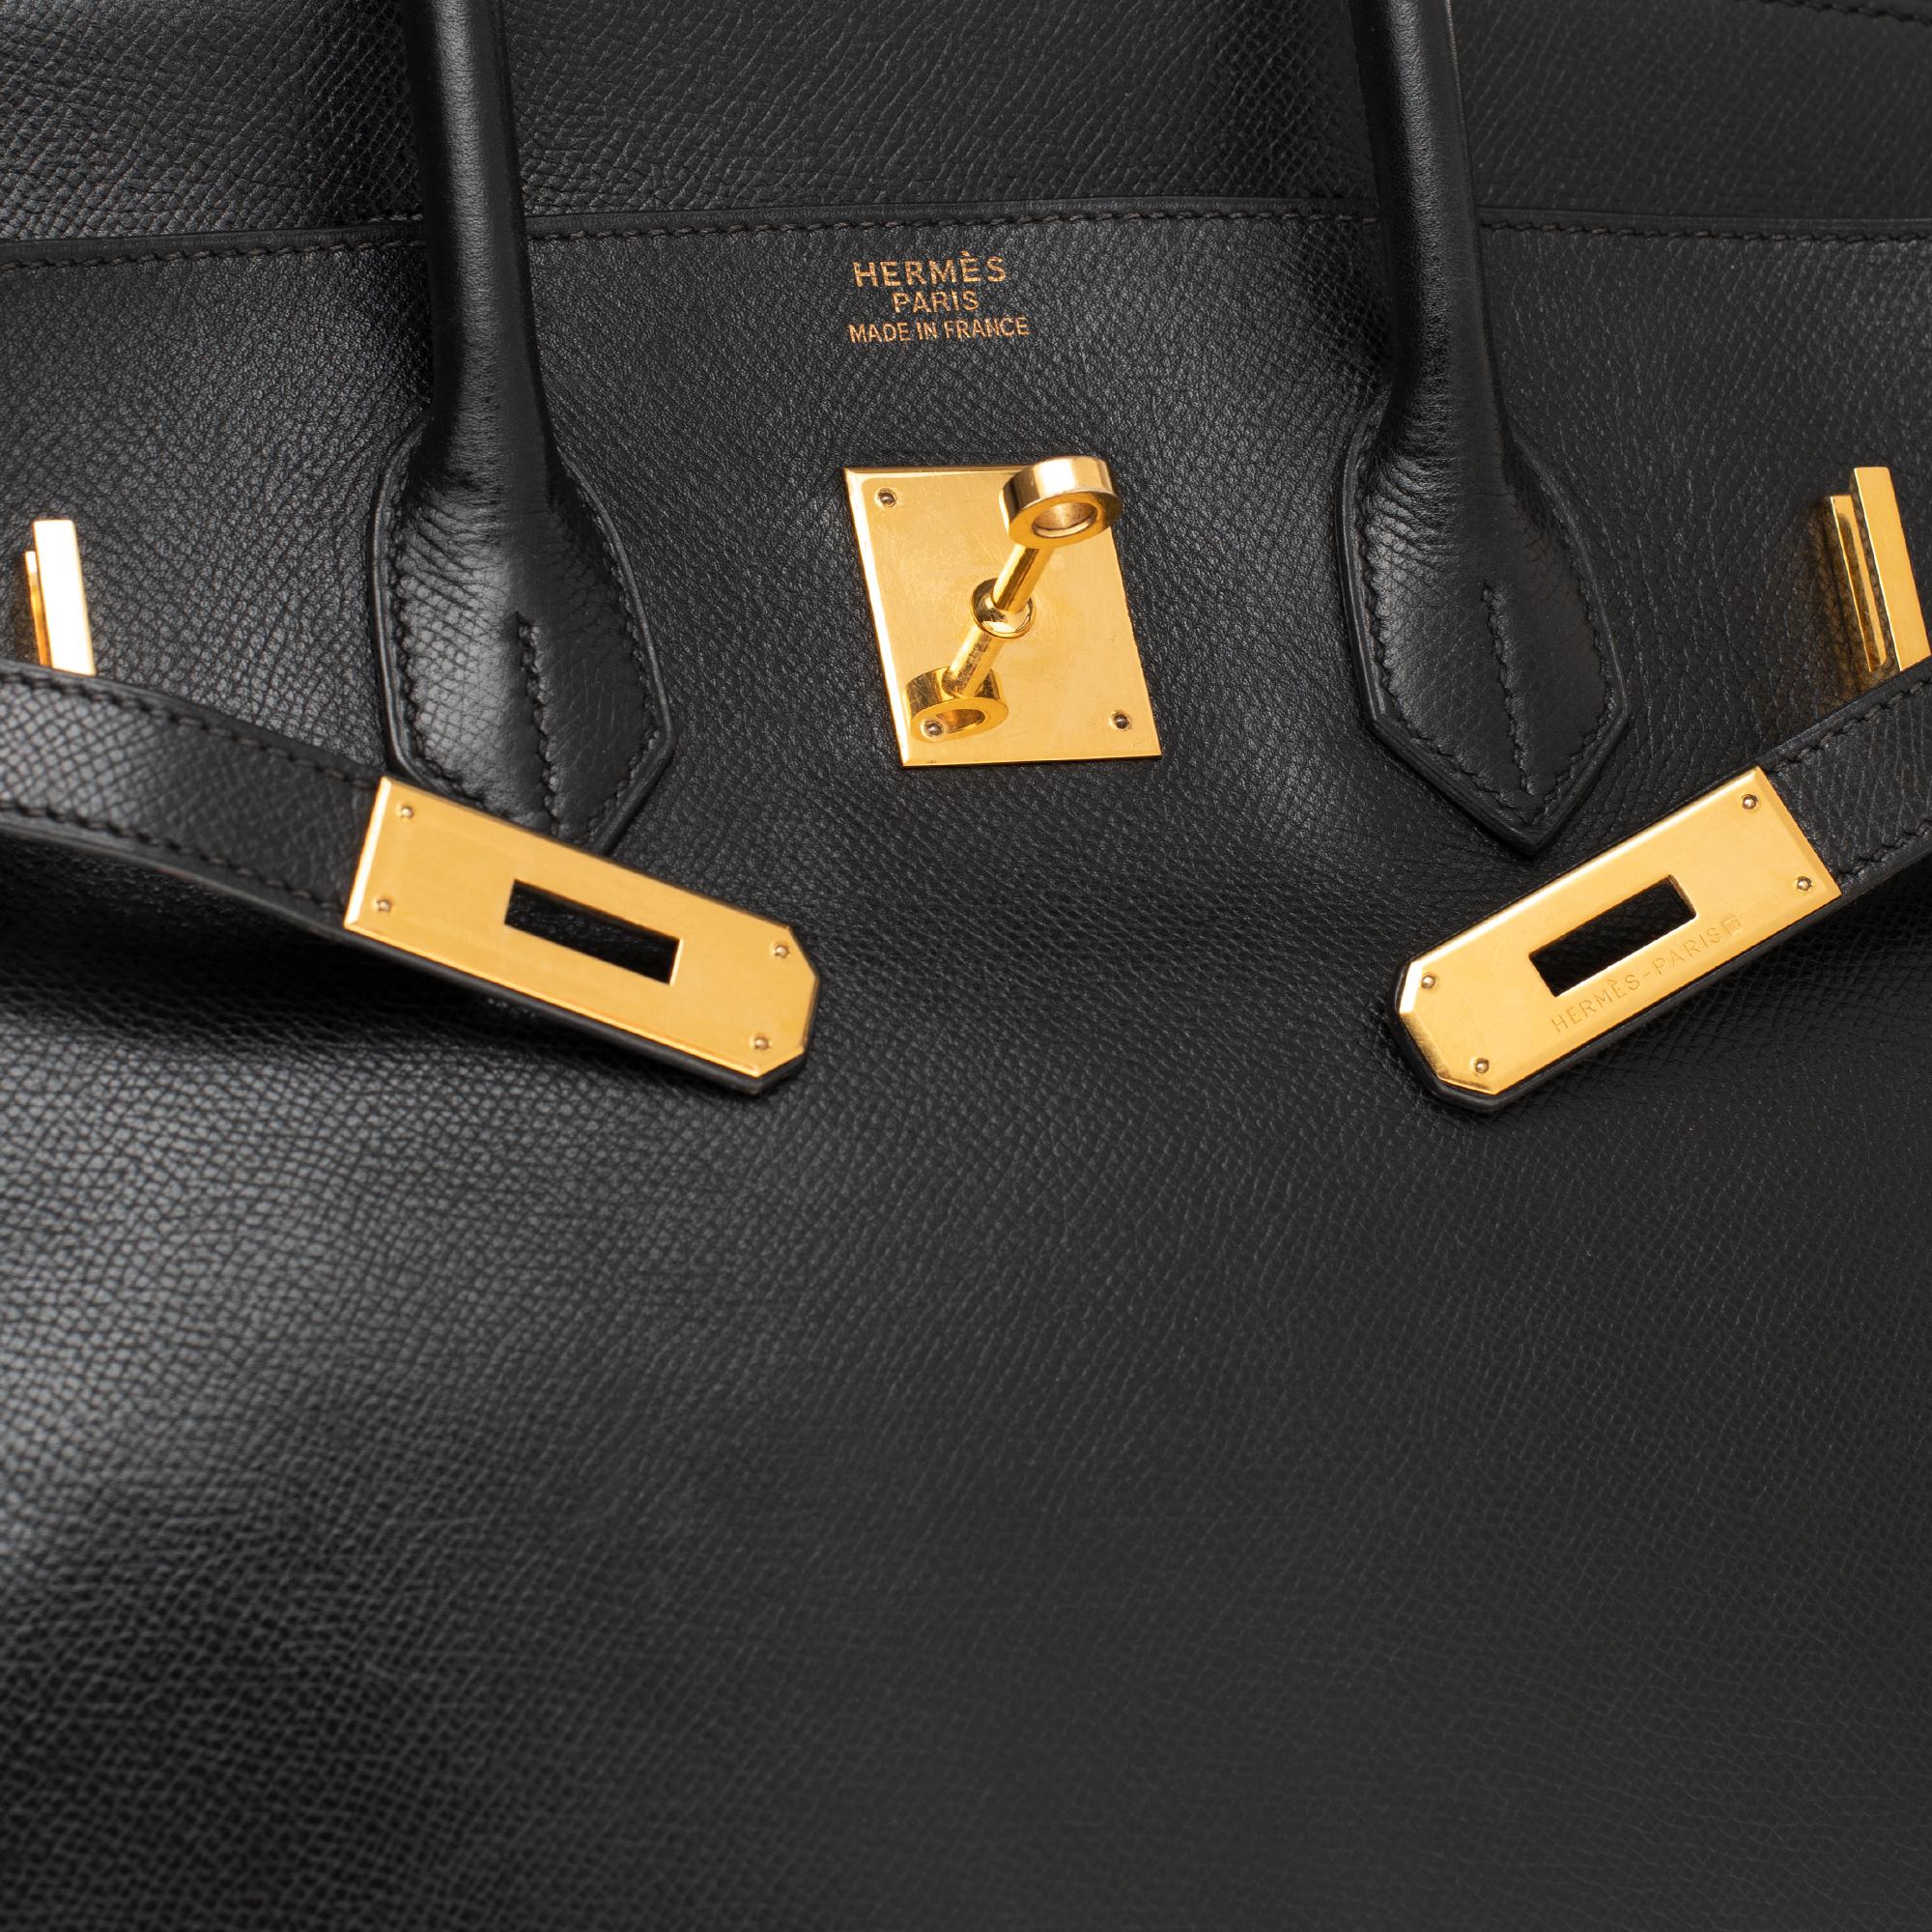 Women's Hermès Birkin 35 handbag in black Courchevel leather, Gold hardware